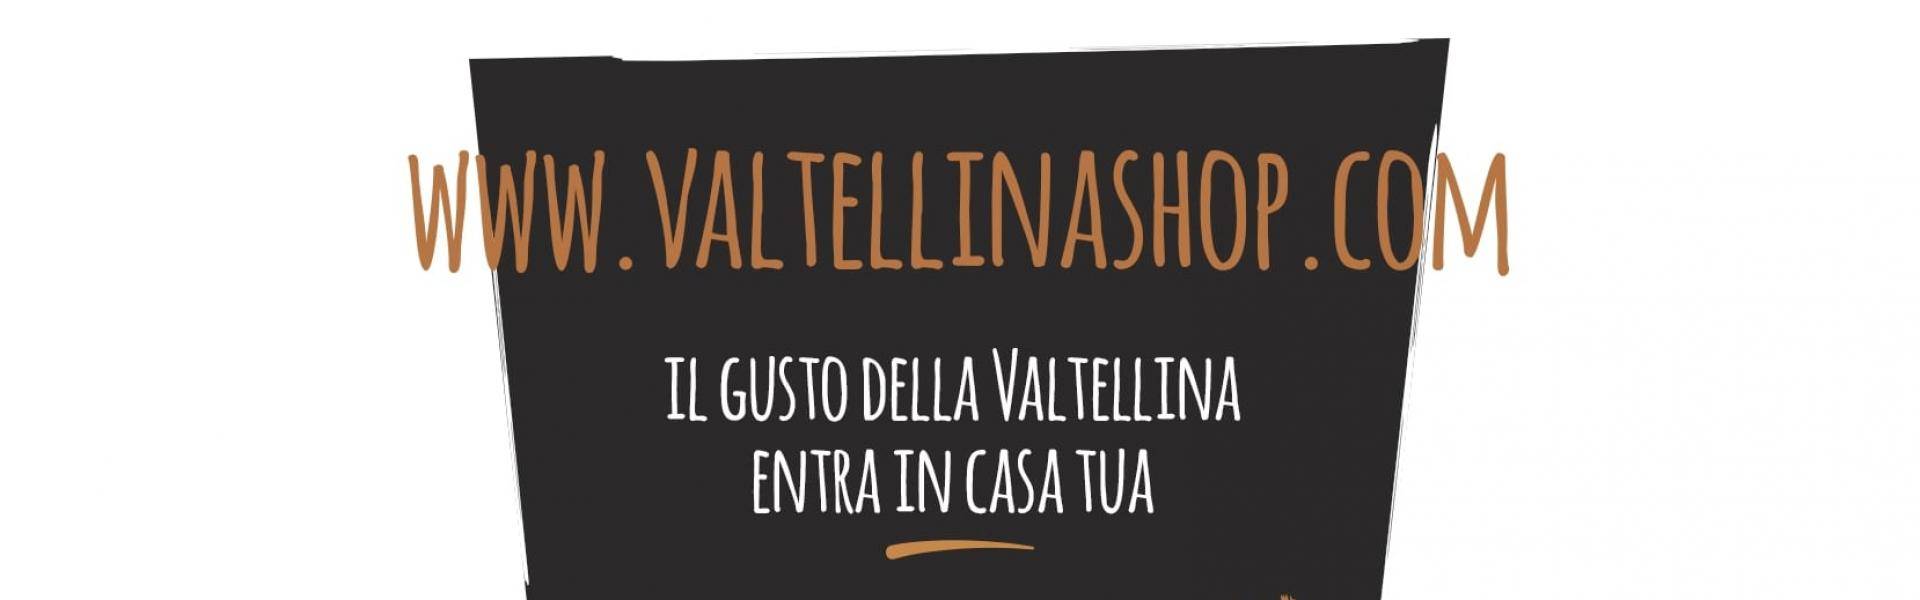 Valtellina Shop